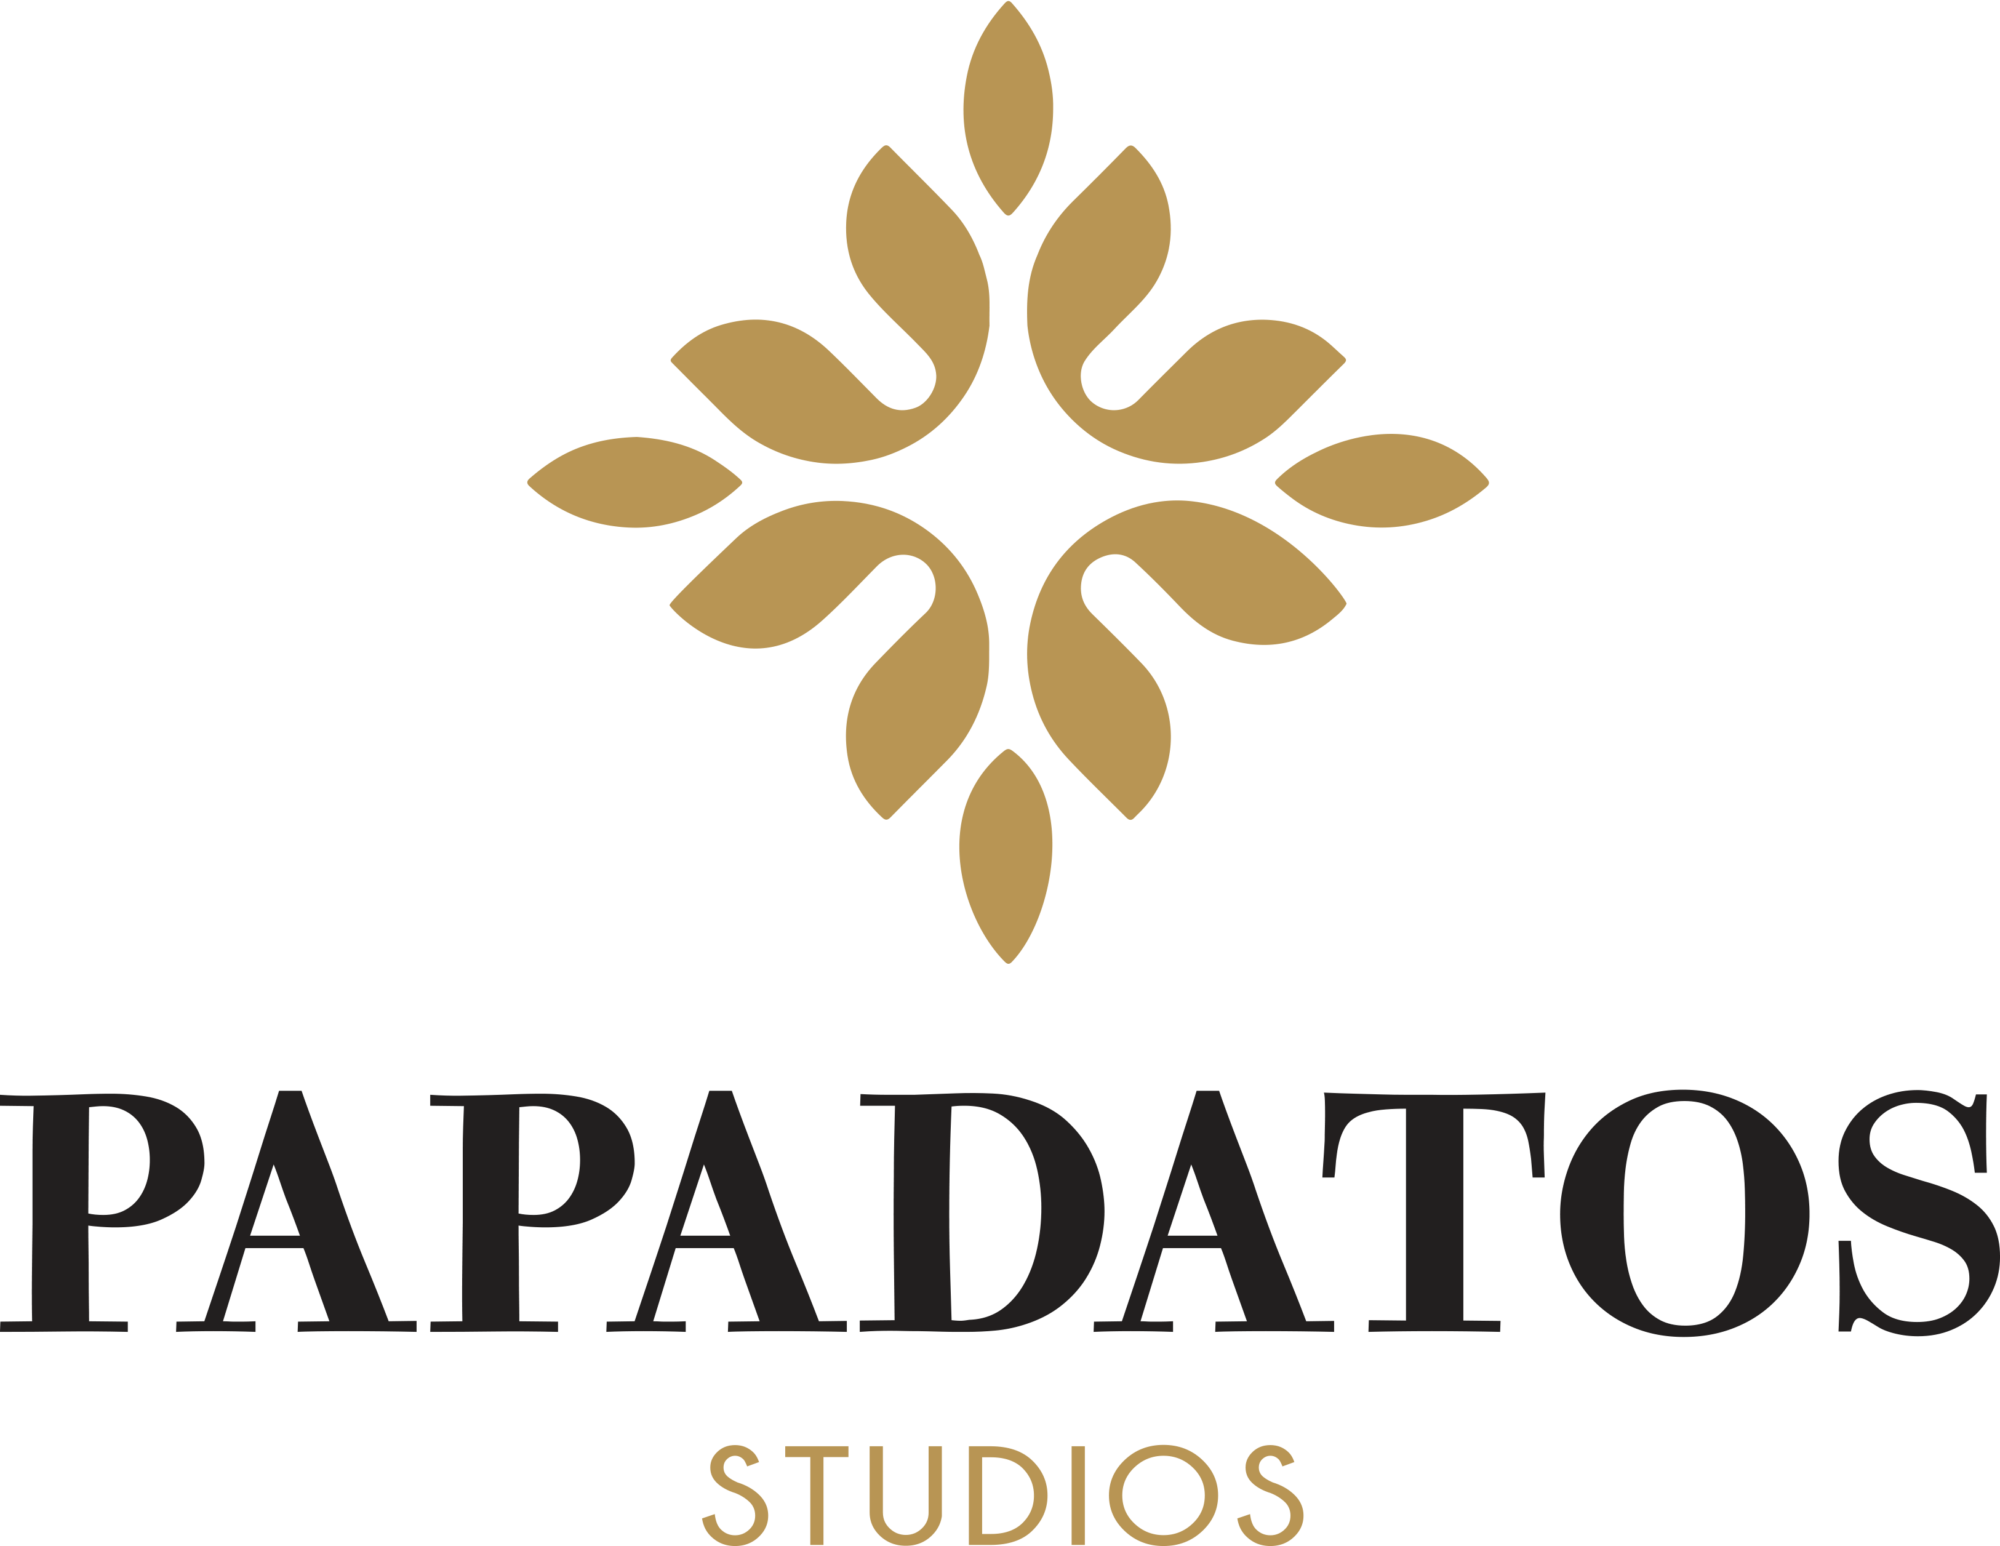 Papadatos Studios